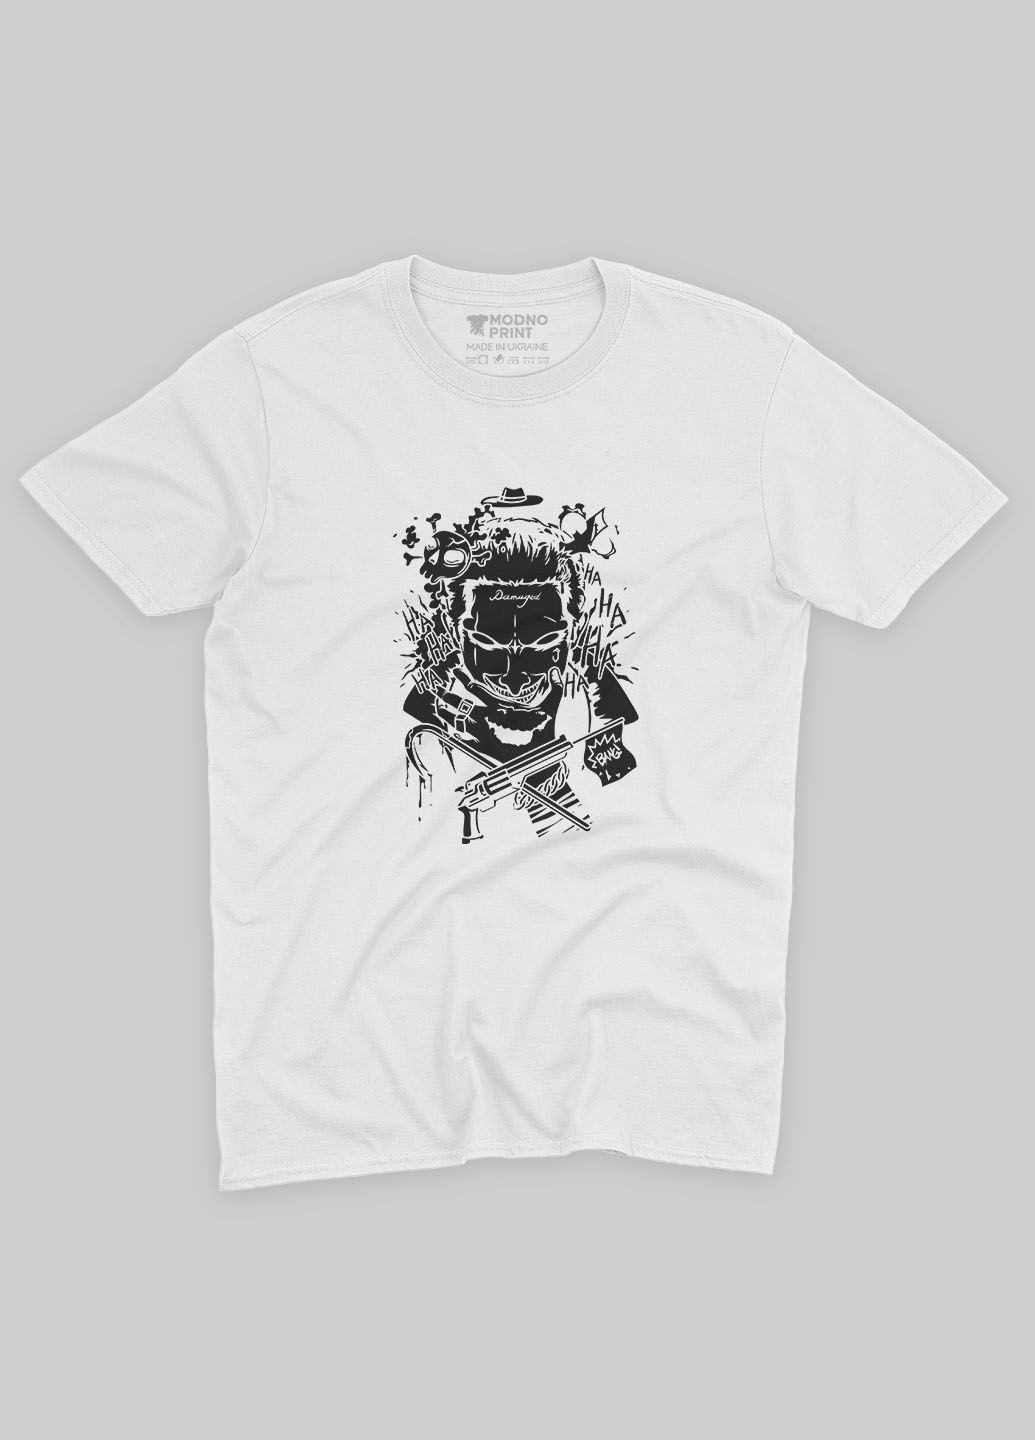 Белая демисезонная футболка для девочки с принтом супервора - джокер (ts001-1-whi-006-005-016-g) Modno